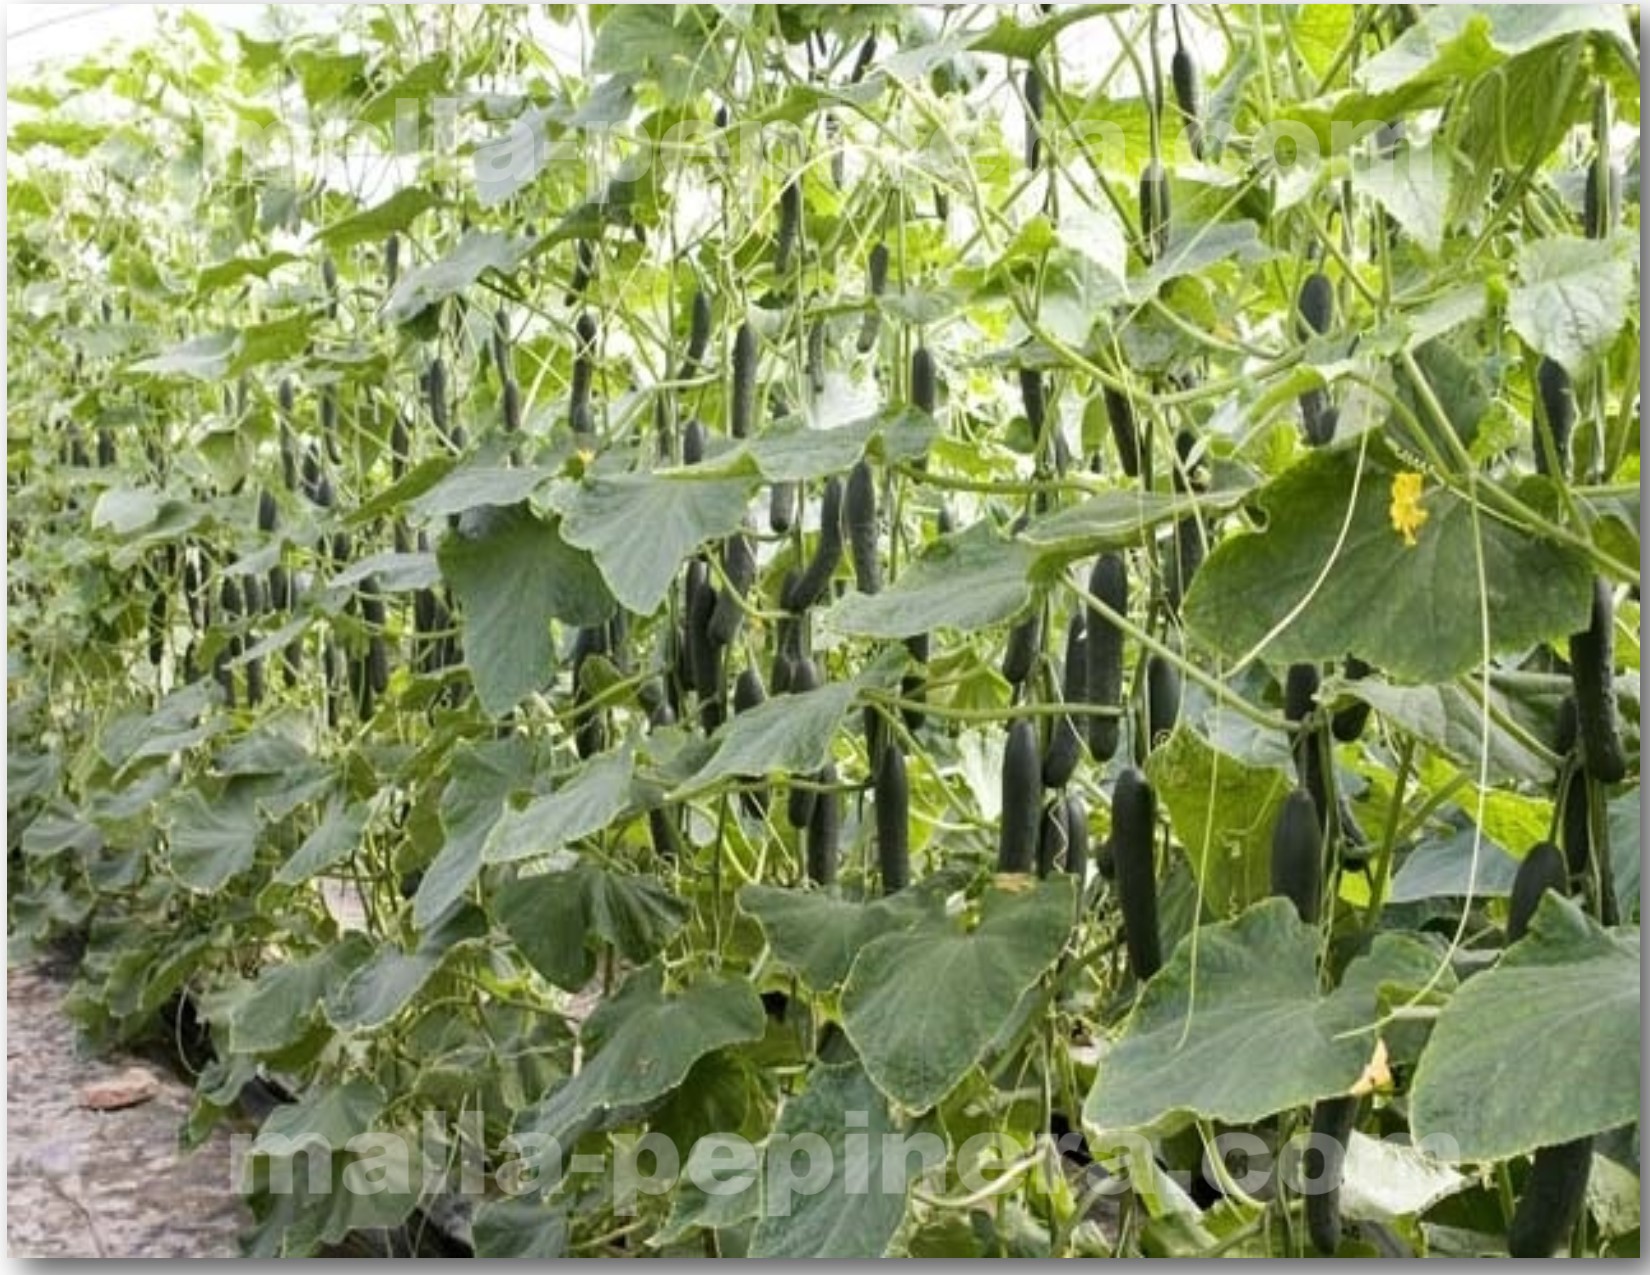 Tutorado vertical en cultivo de pepino